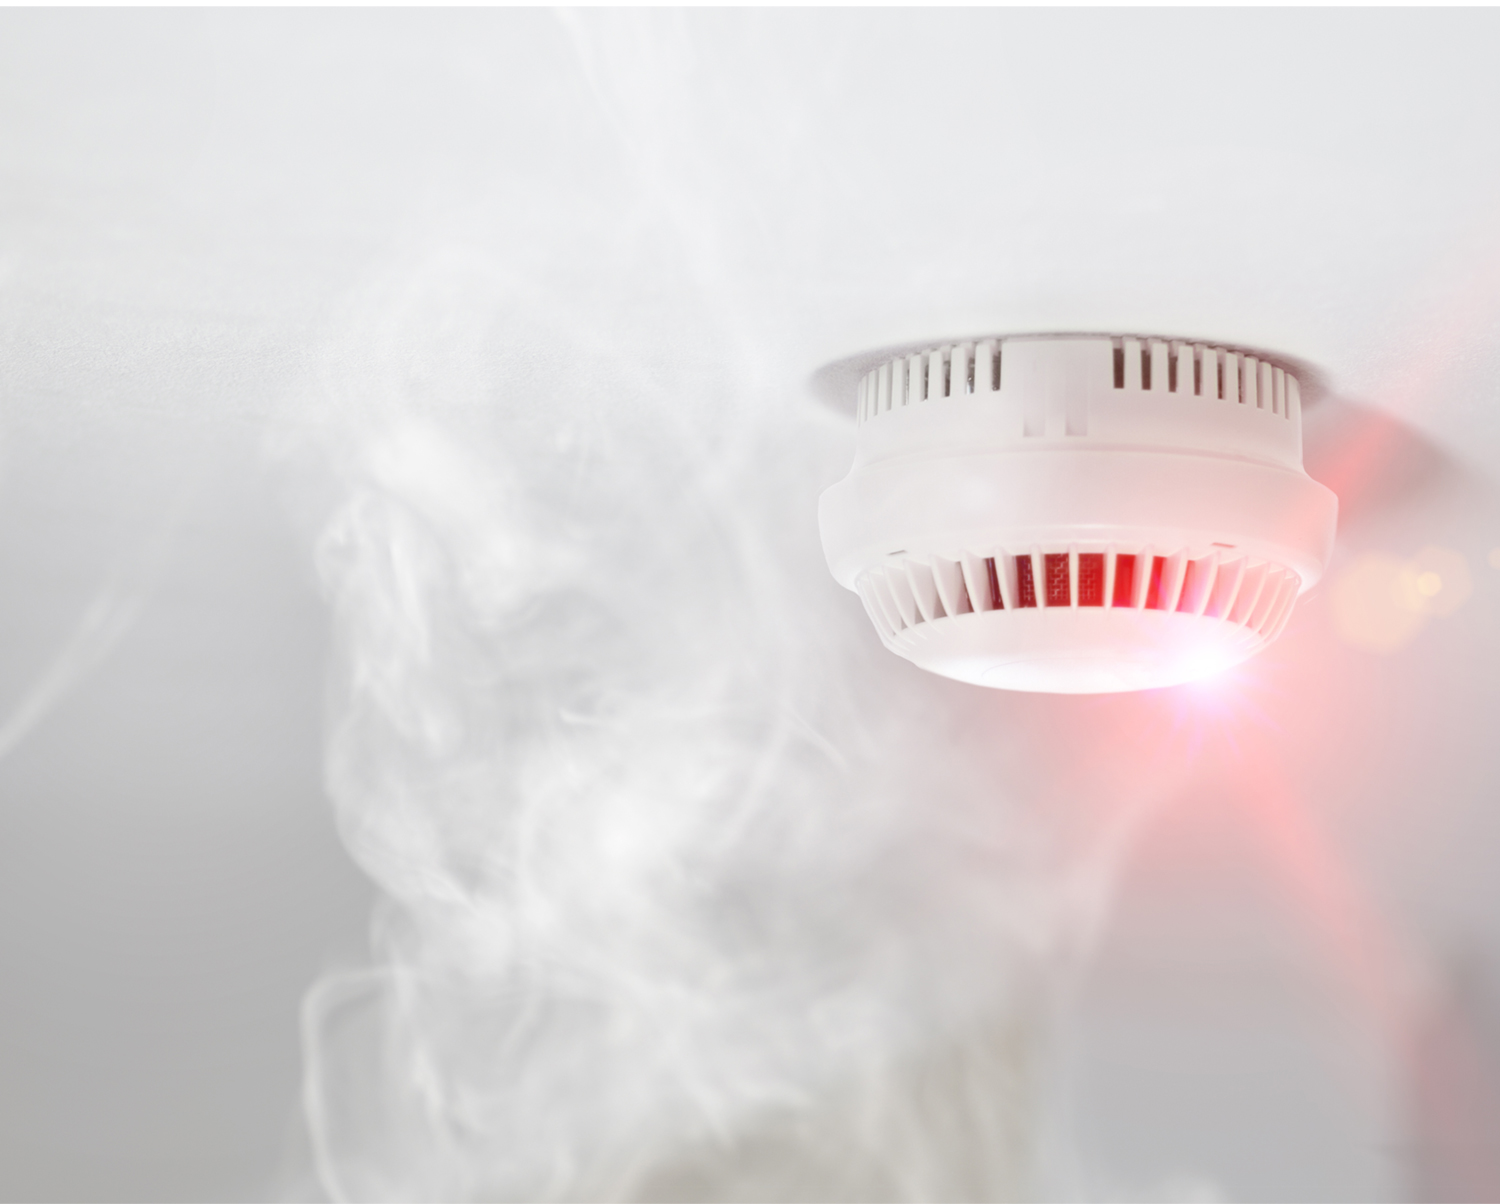 Smoke detector with wafting smoke